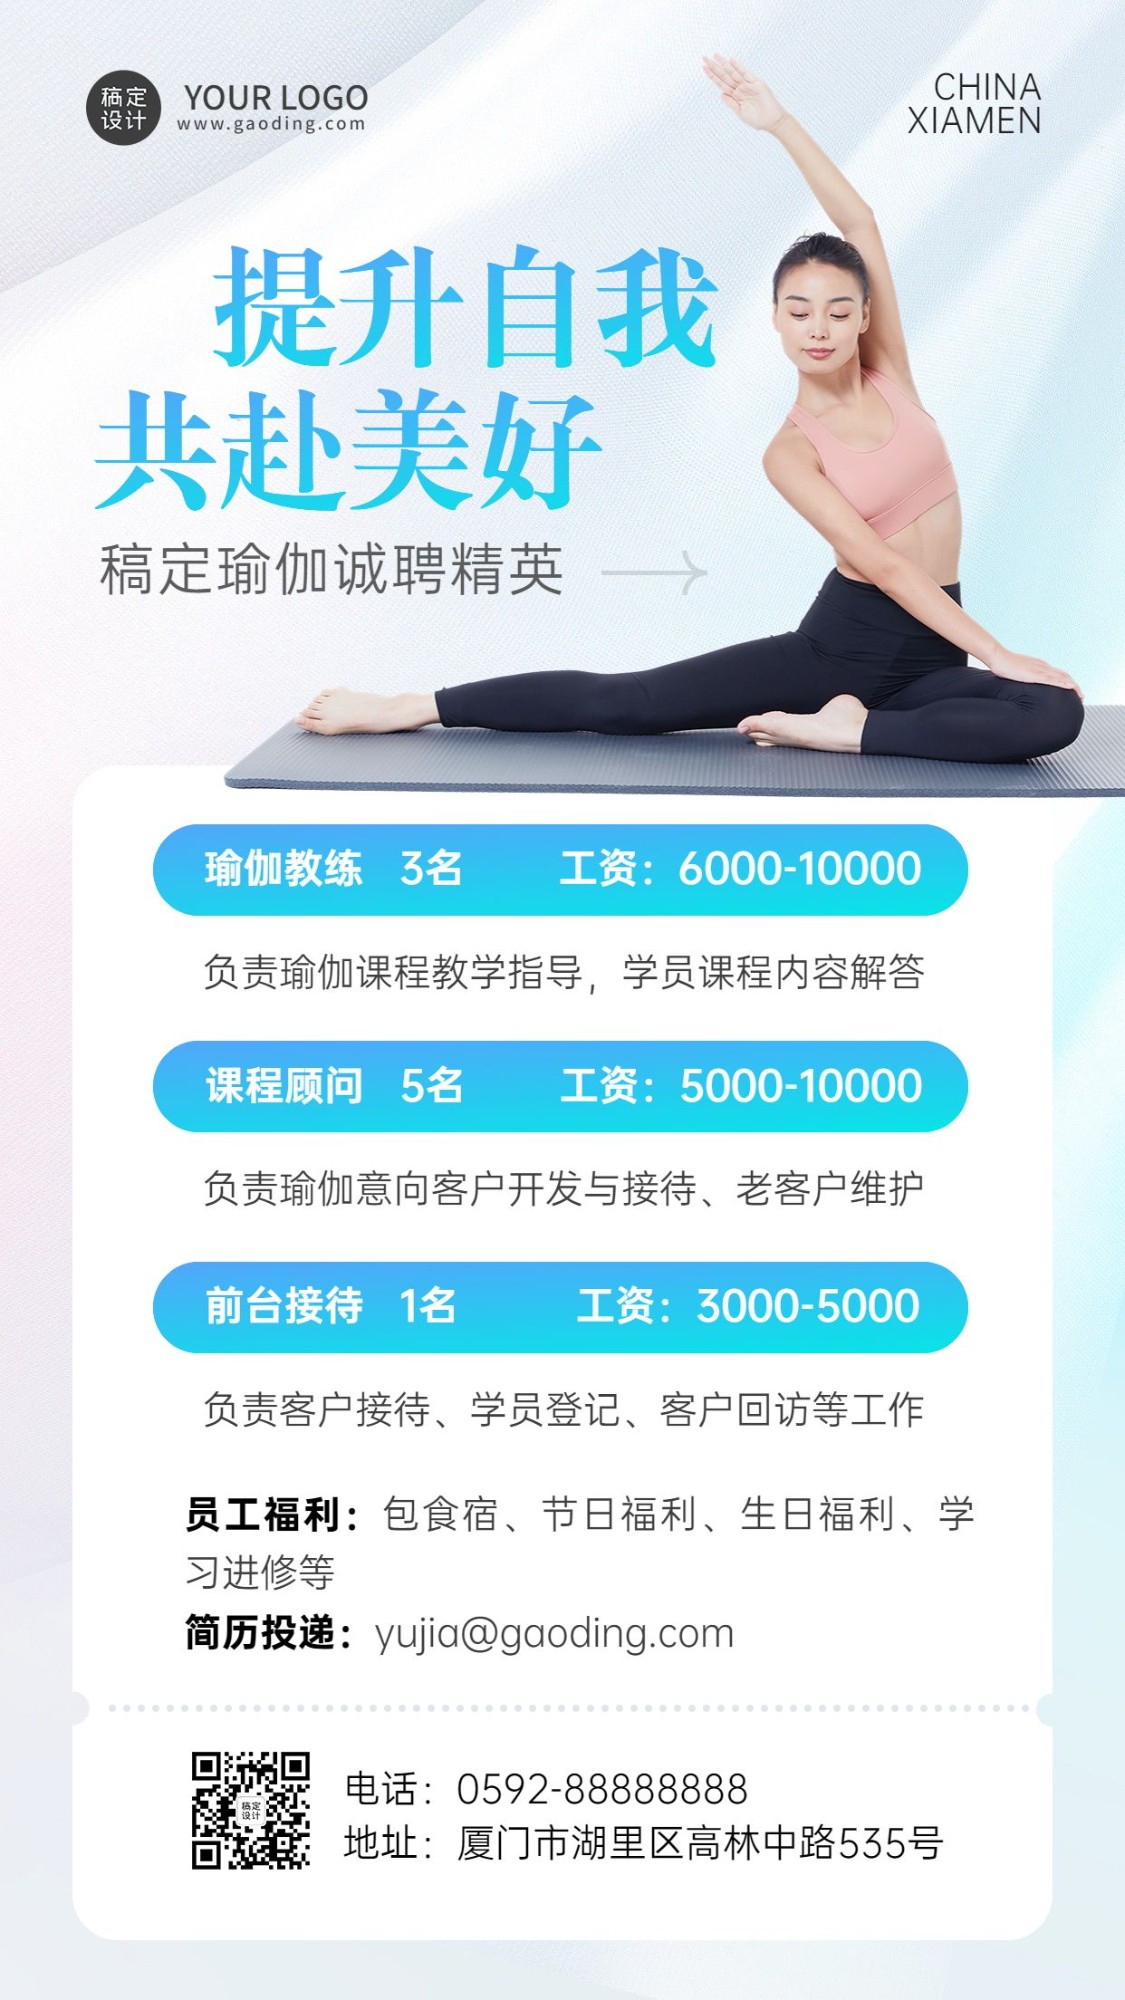 运动健身瑜伽馆求职招聘宣传手机海报预览效果